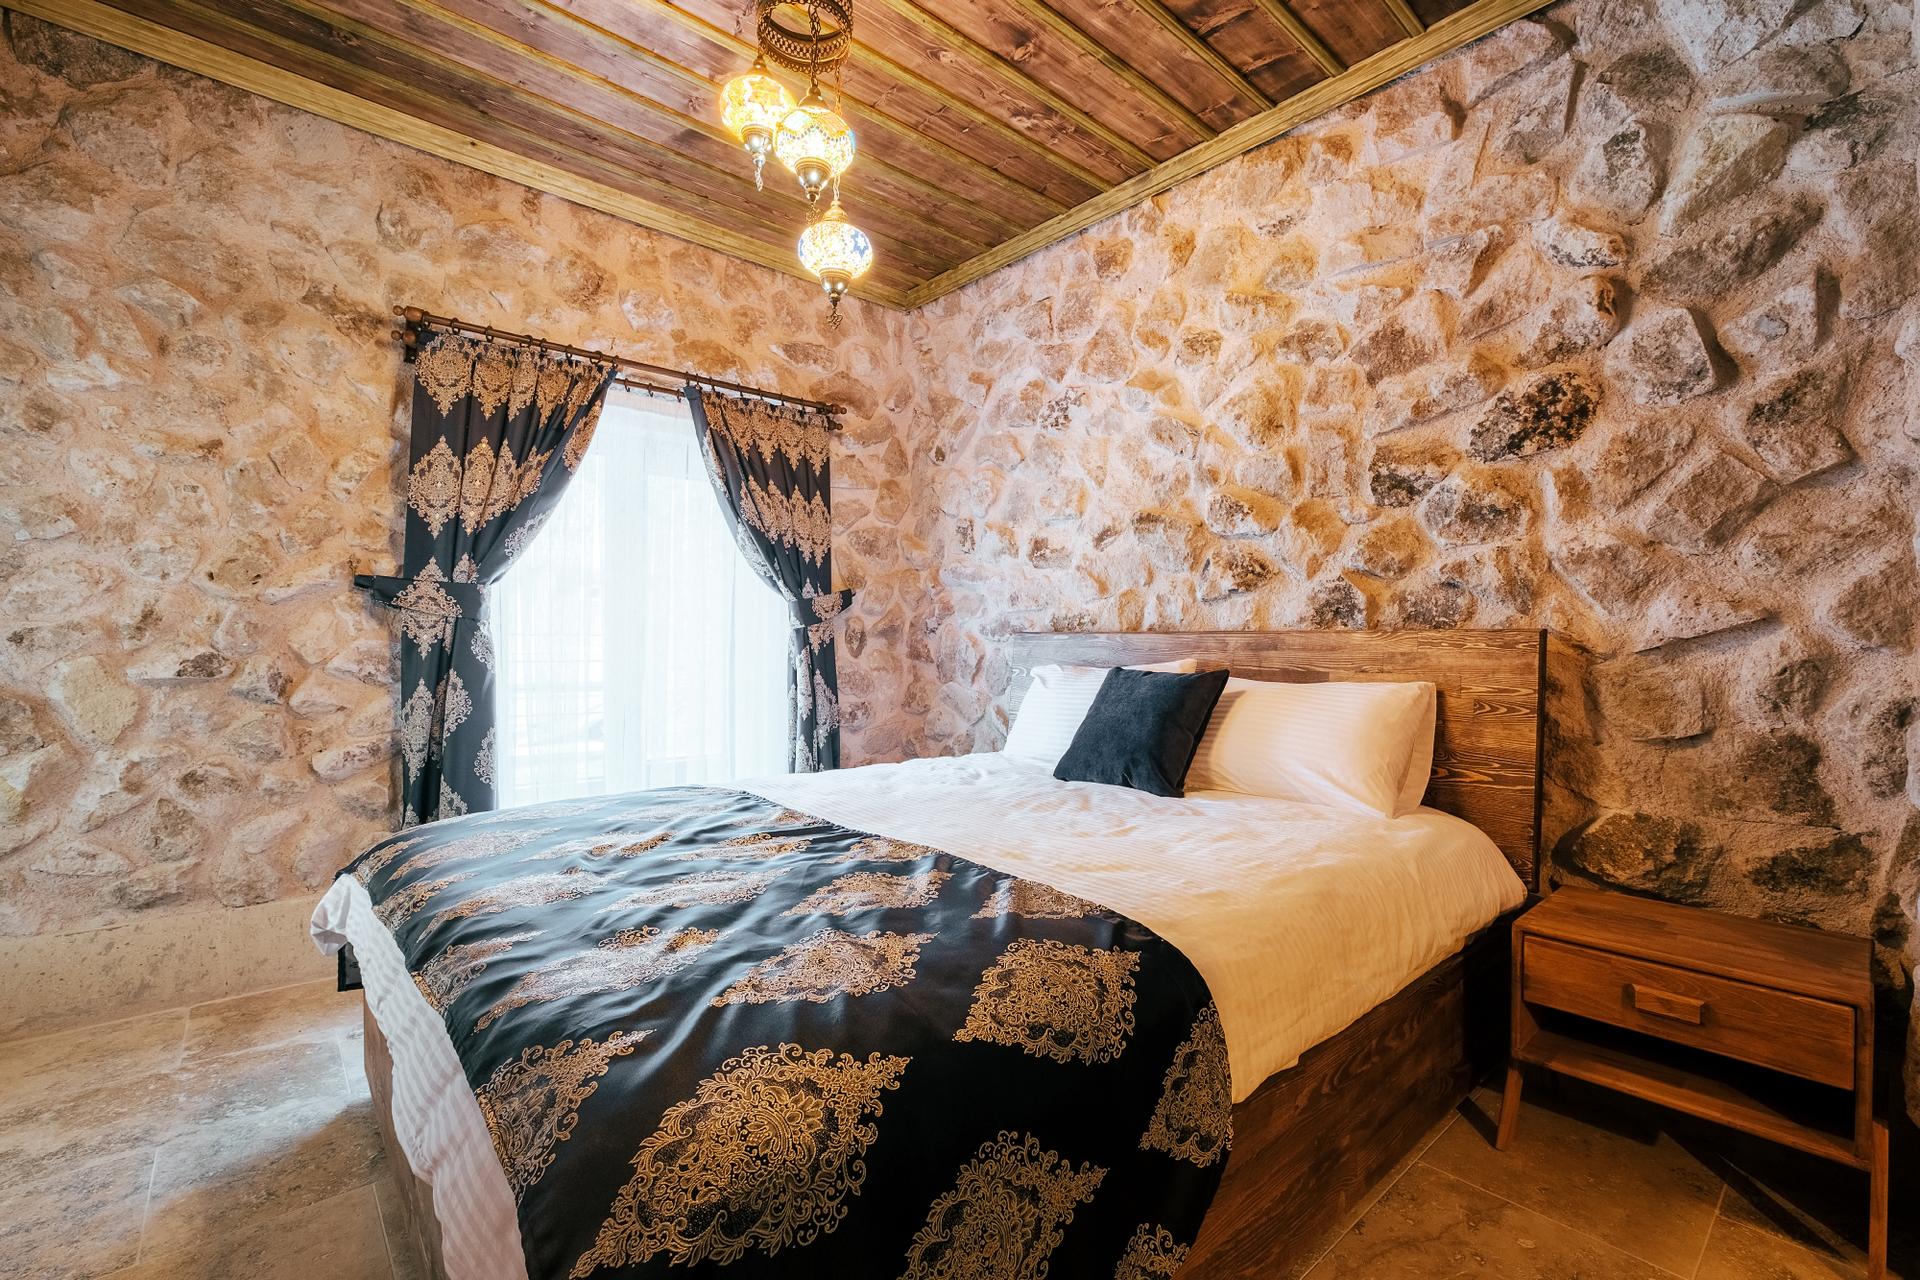 A cozy bedroom retreat in the heart of Cappadocia.